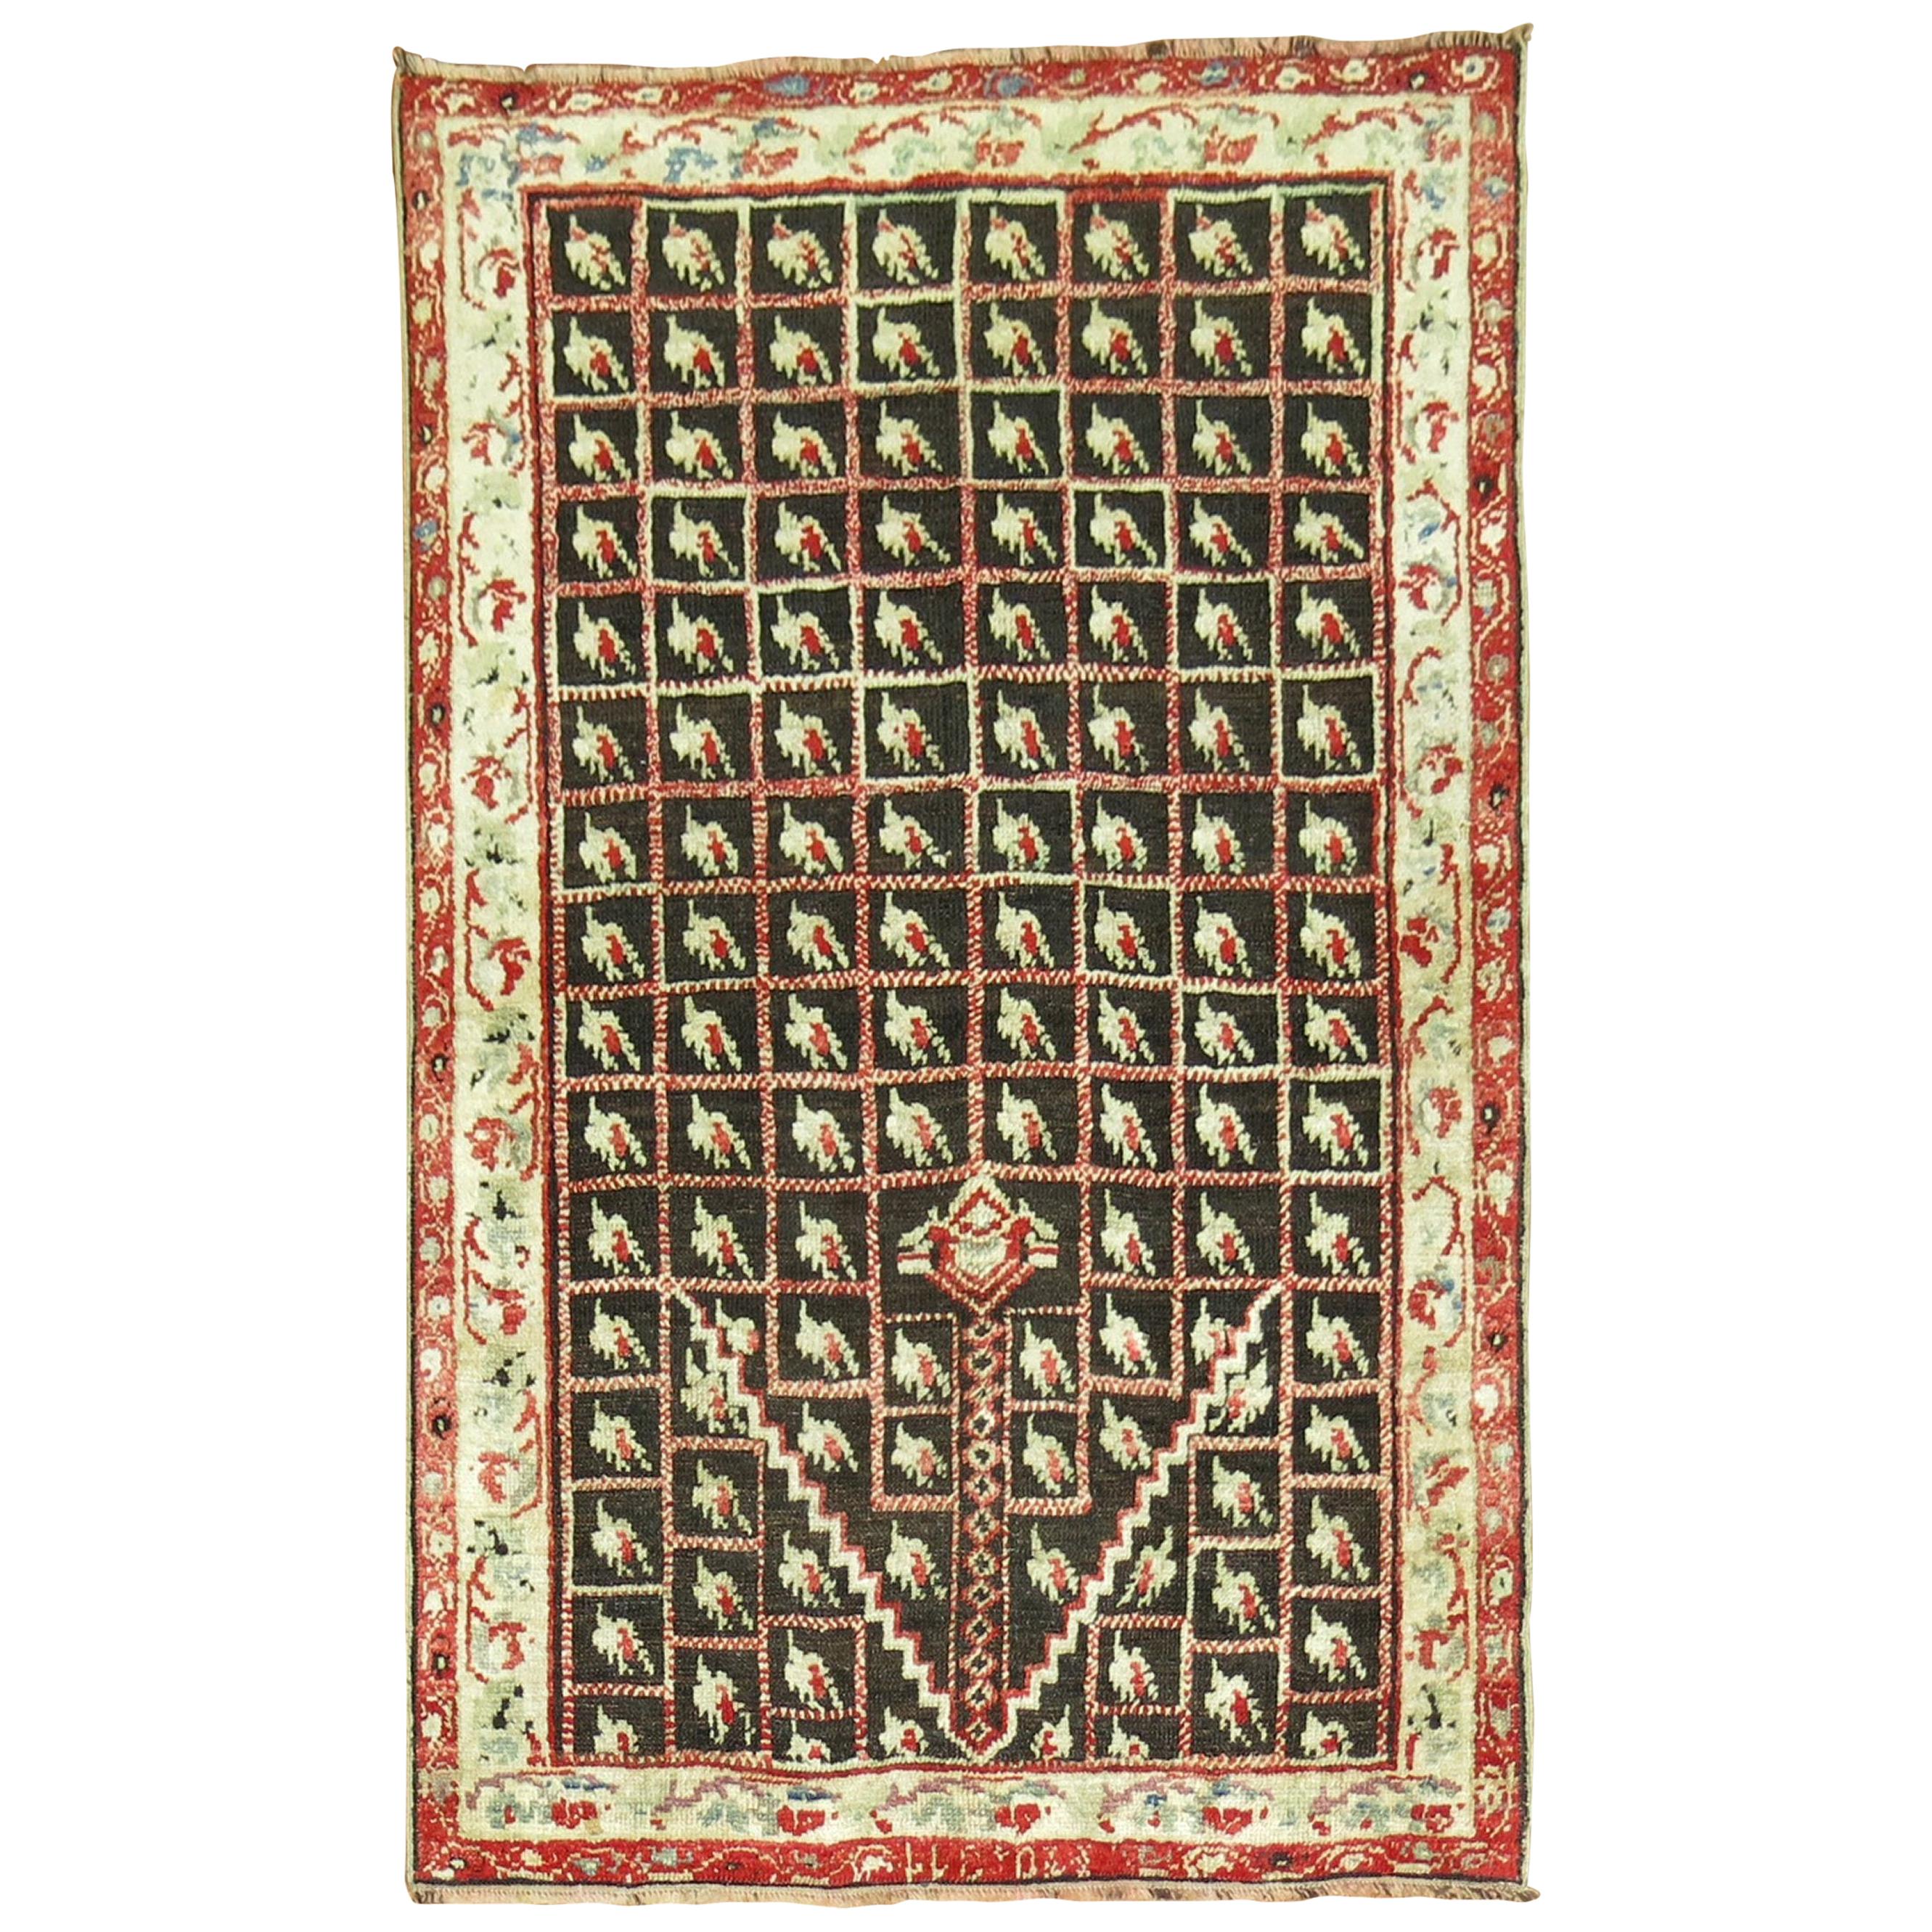 Brauner antiker türkischer Ghiordes-Teppich aus dem frühen 20. Jahrhundert